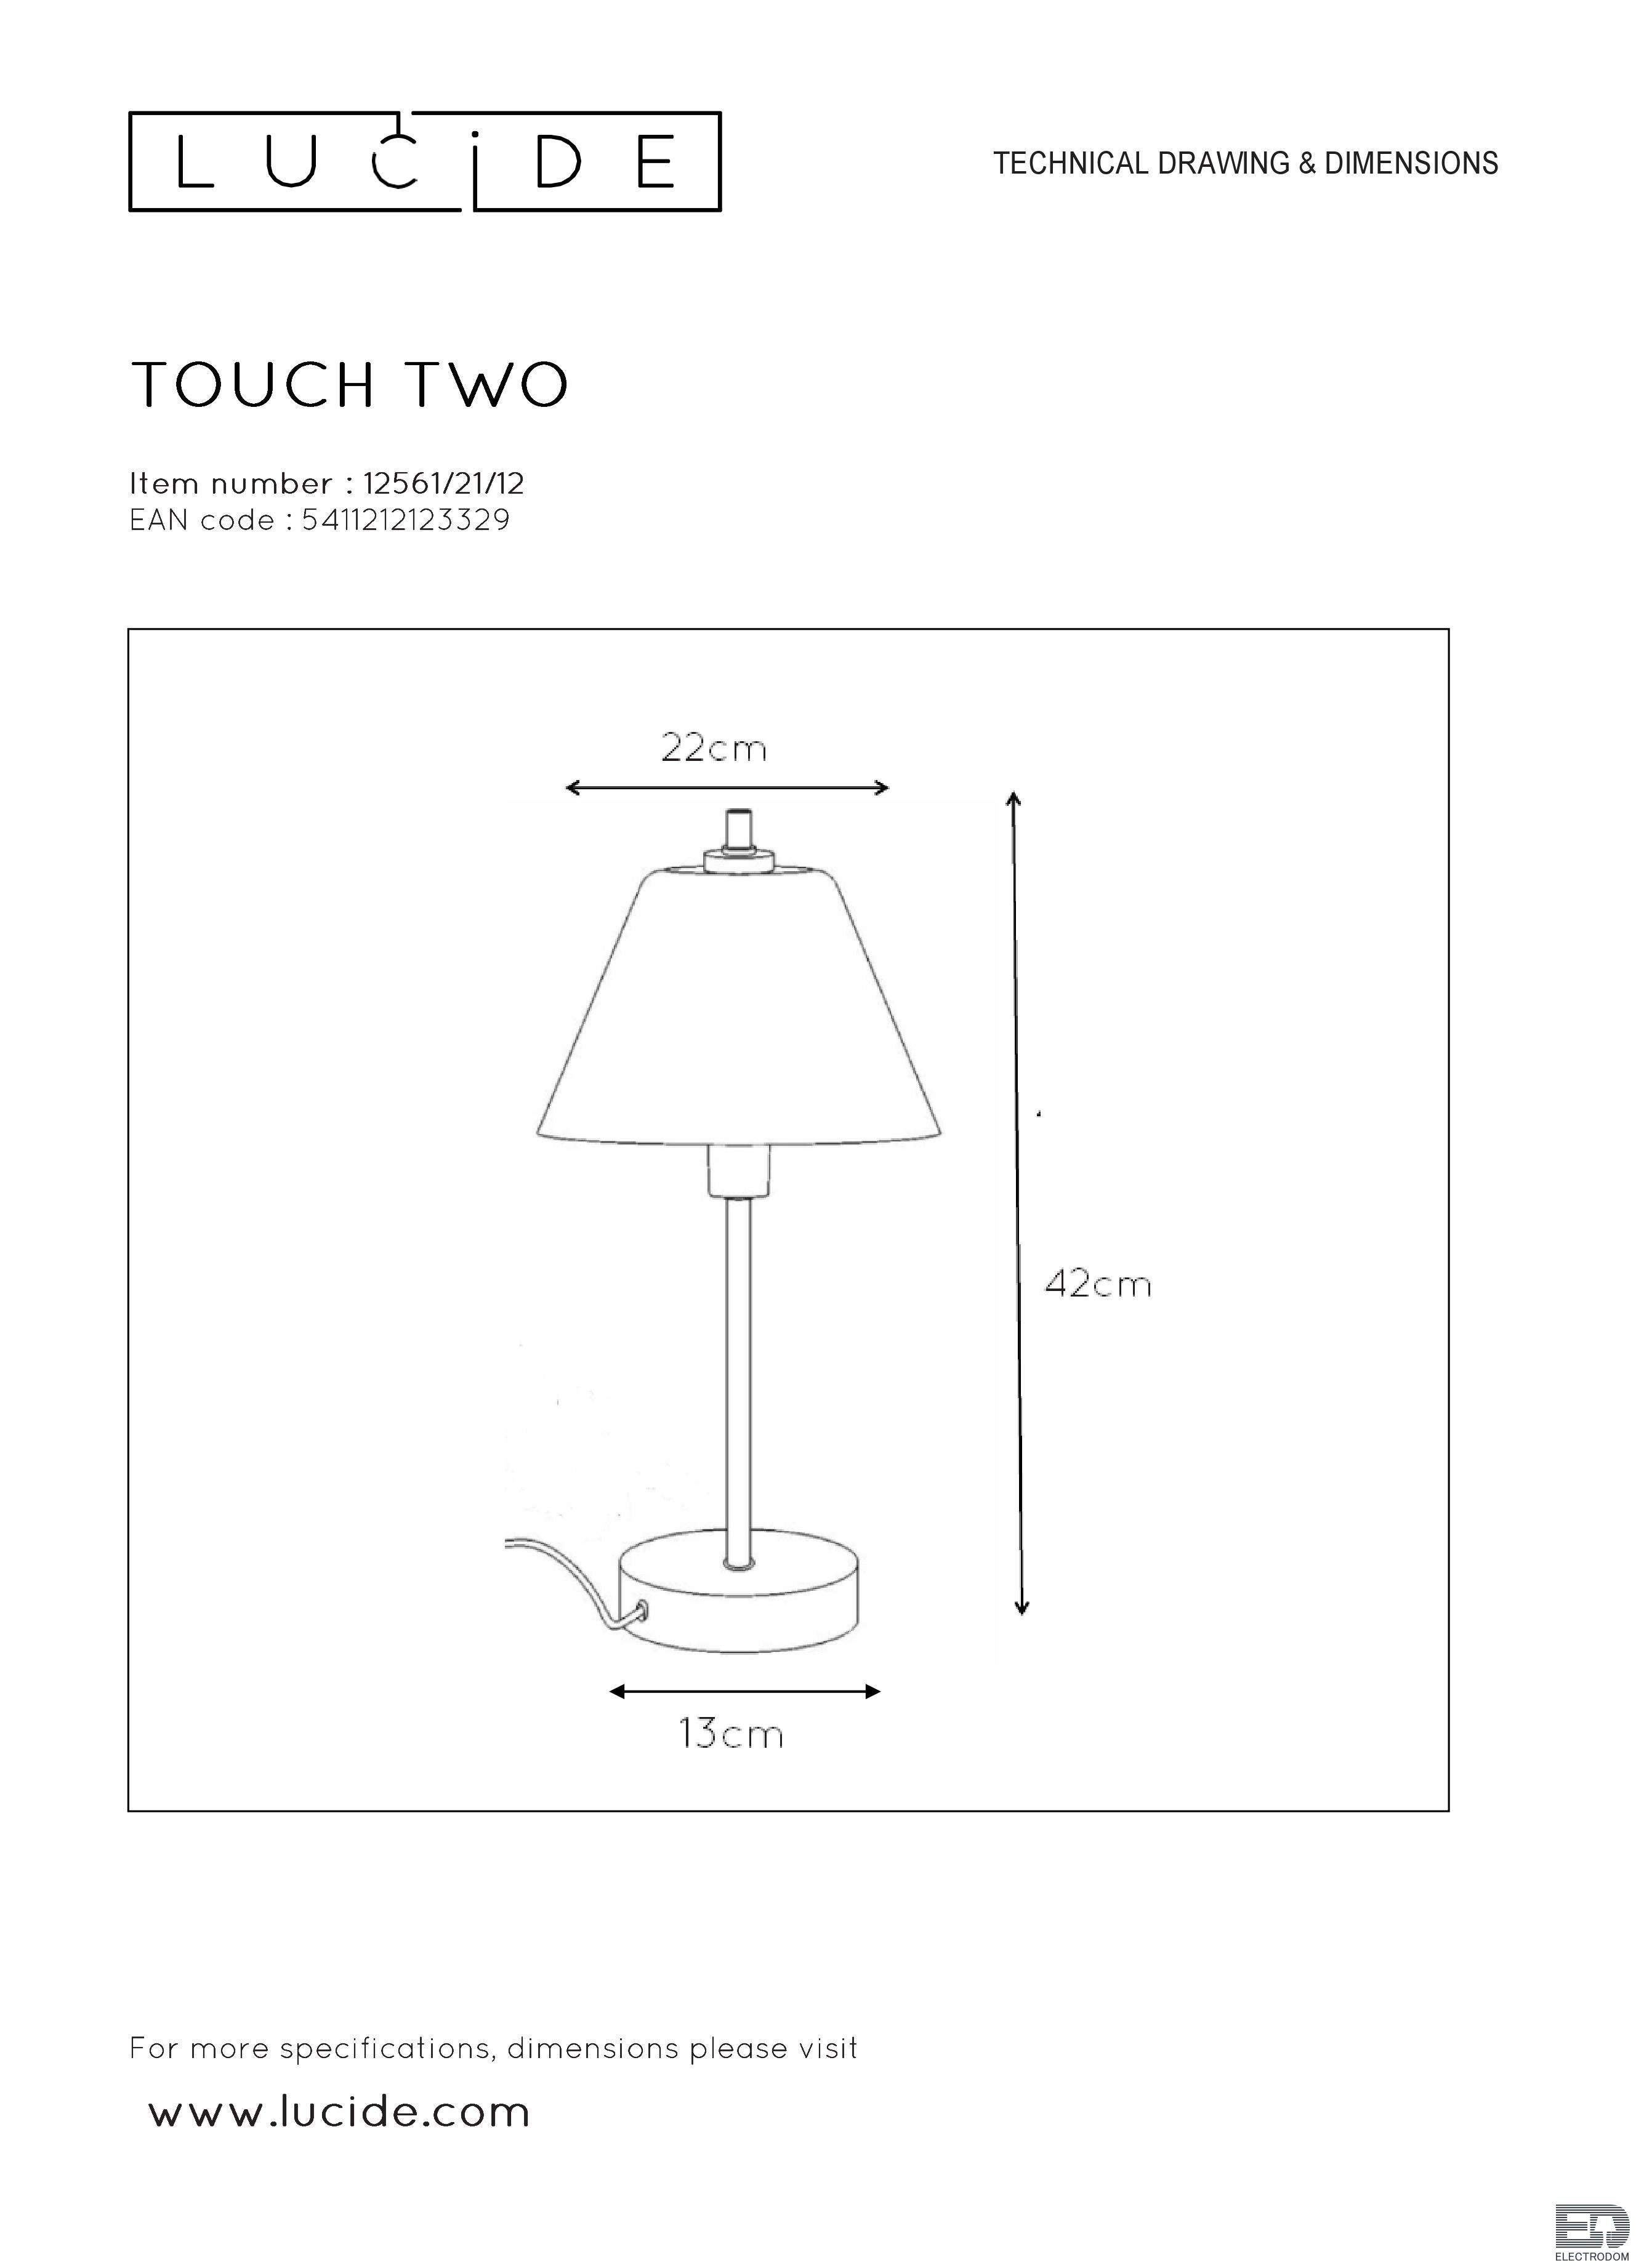 Настольная лампа Lucide Touch 12561/21/12 - цена и фото 4